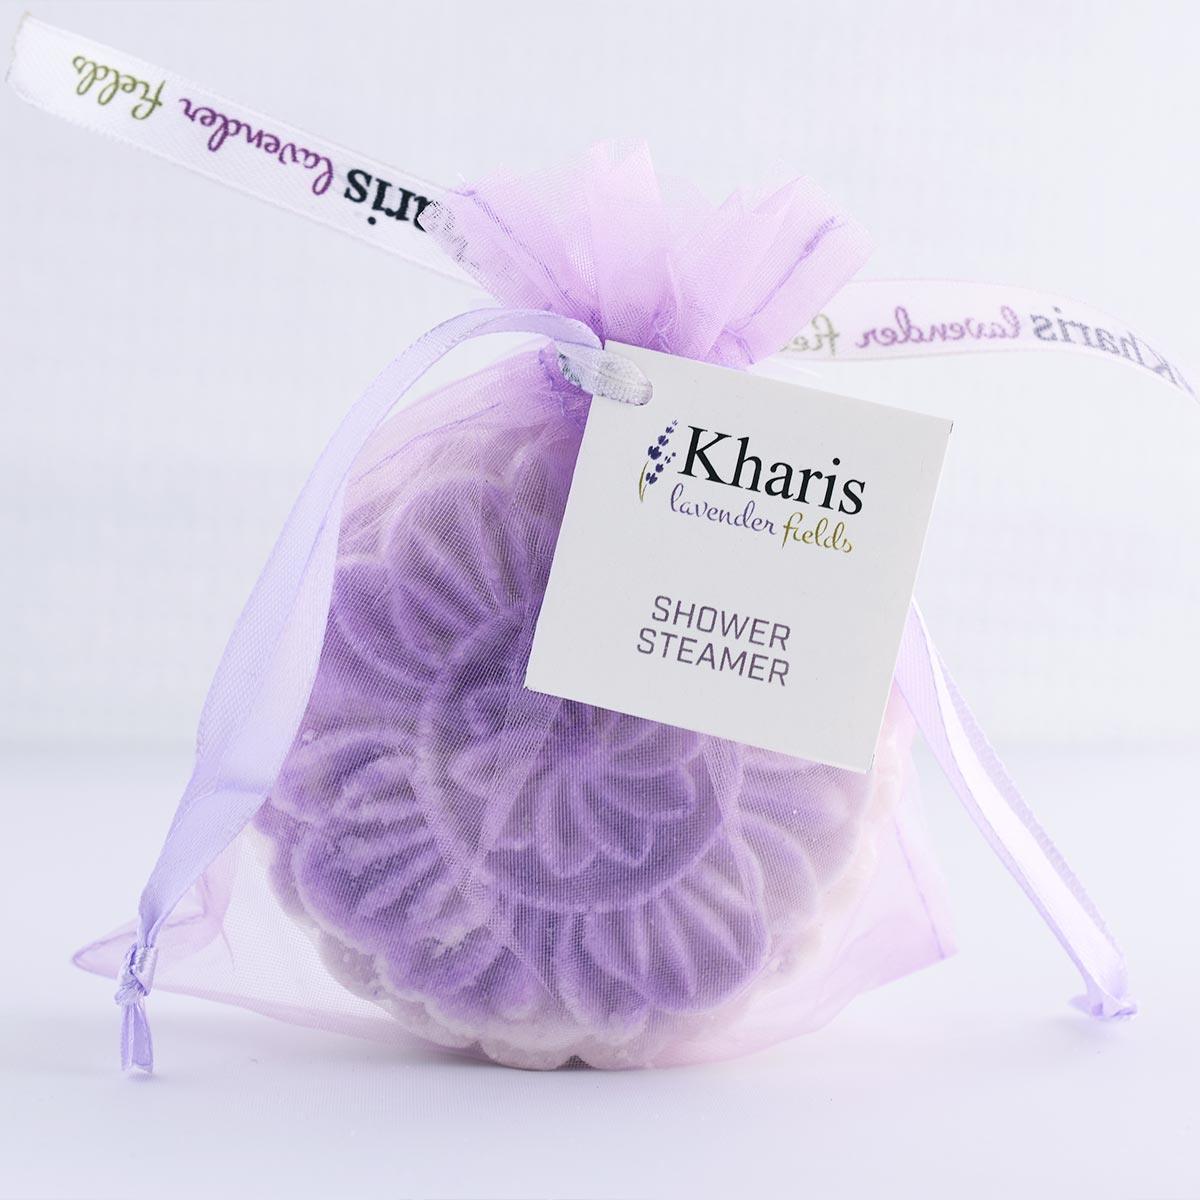 Shower Steamer - Kharislavender